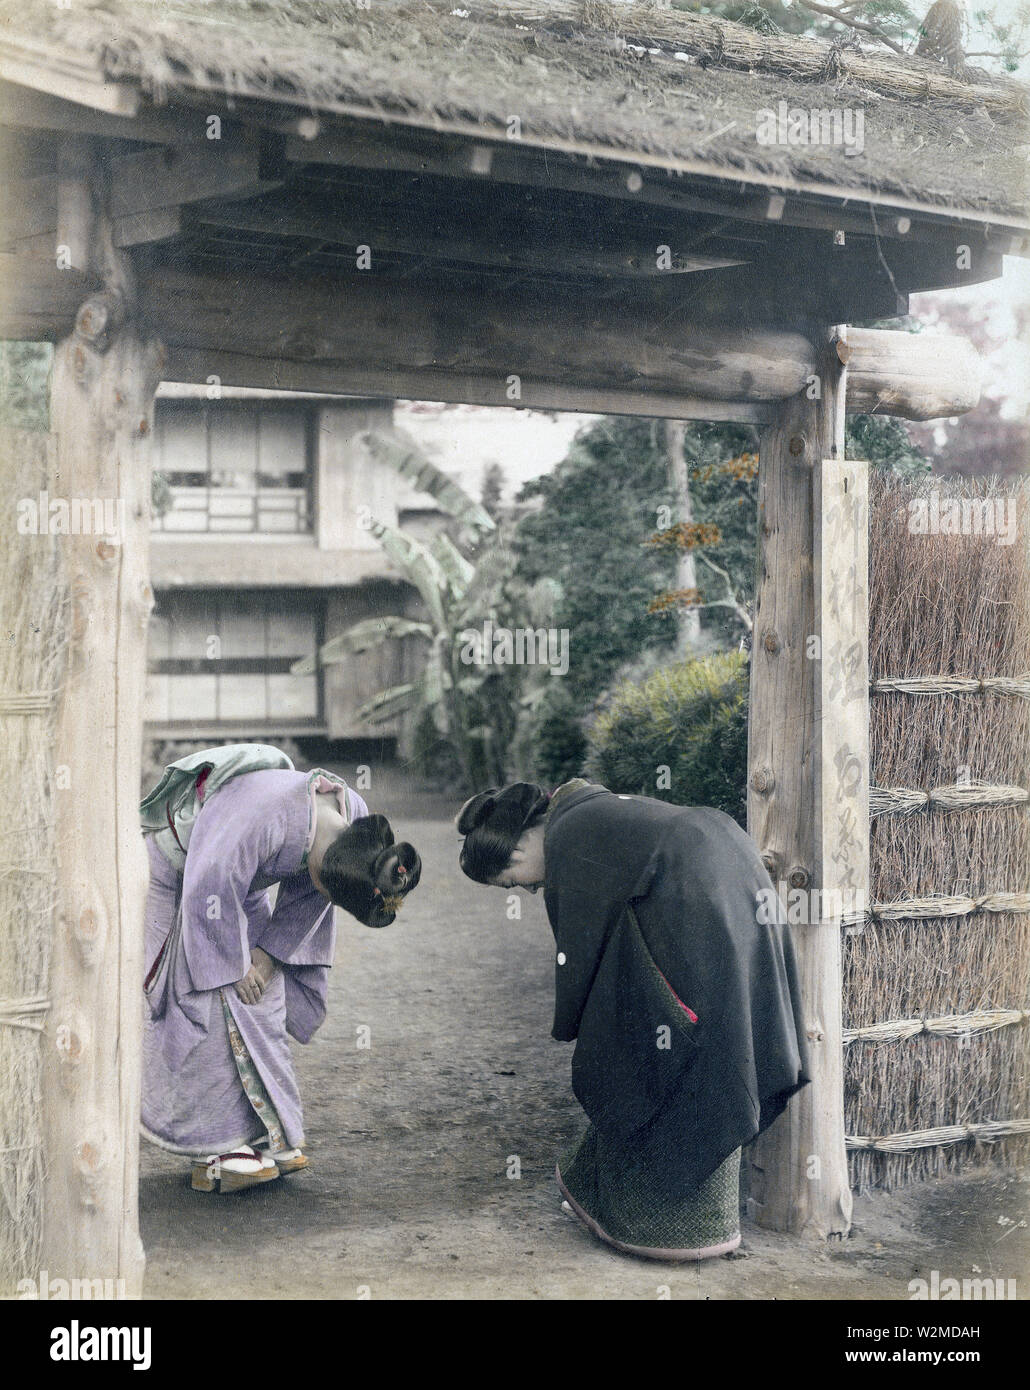 [ 1880 Giappone - Le donne giapponesi saluto al Gate ] - Due giovani donne giapponesi in kimono e tradizionale cappelleria bow presso la porta di una casa privata. Xix secolo albume vintage fotografia. Foto Stock